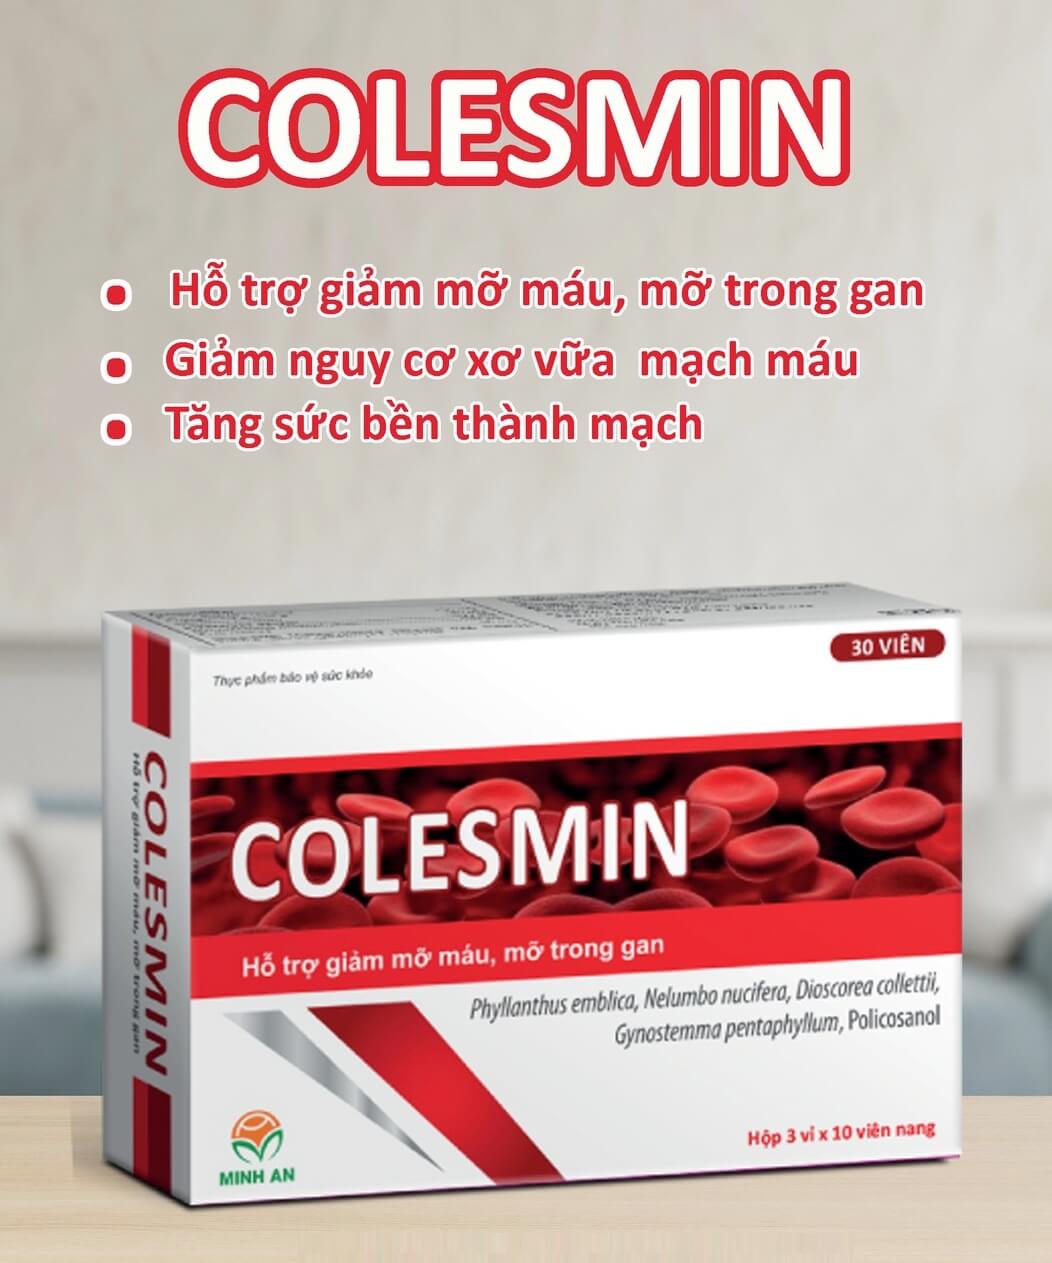 Colesmin hỗ trợ giảm mỡ máu, mỡ trong gan, tăng sức bền thành mạch hình 7